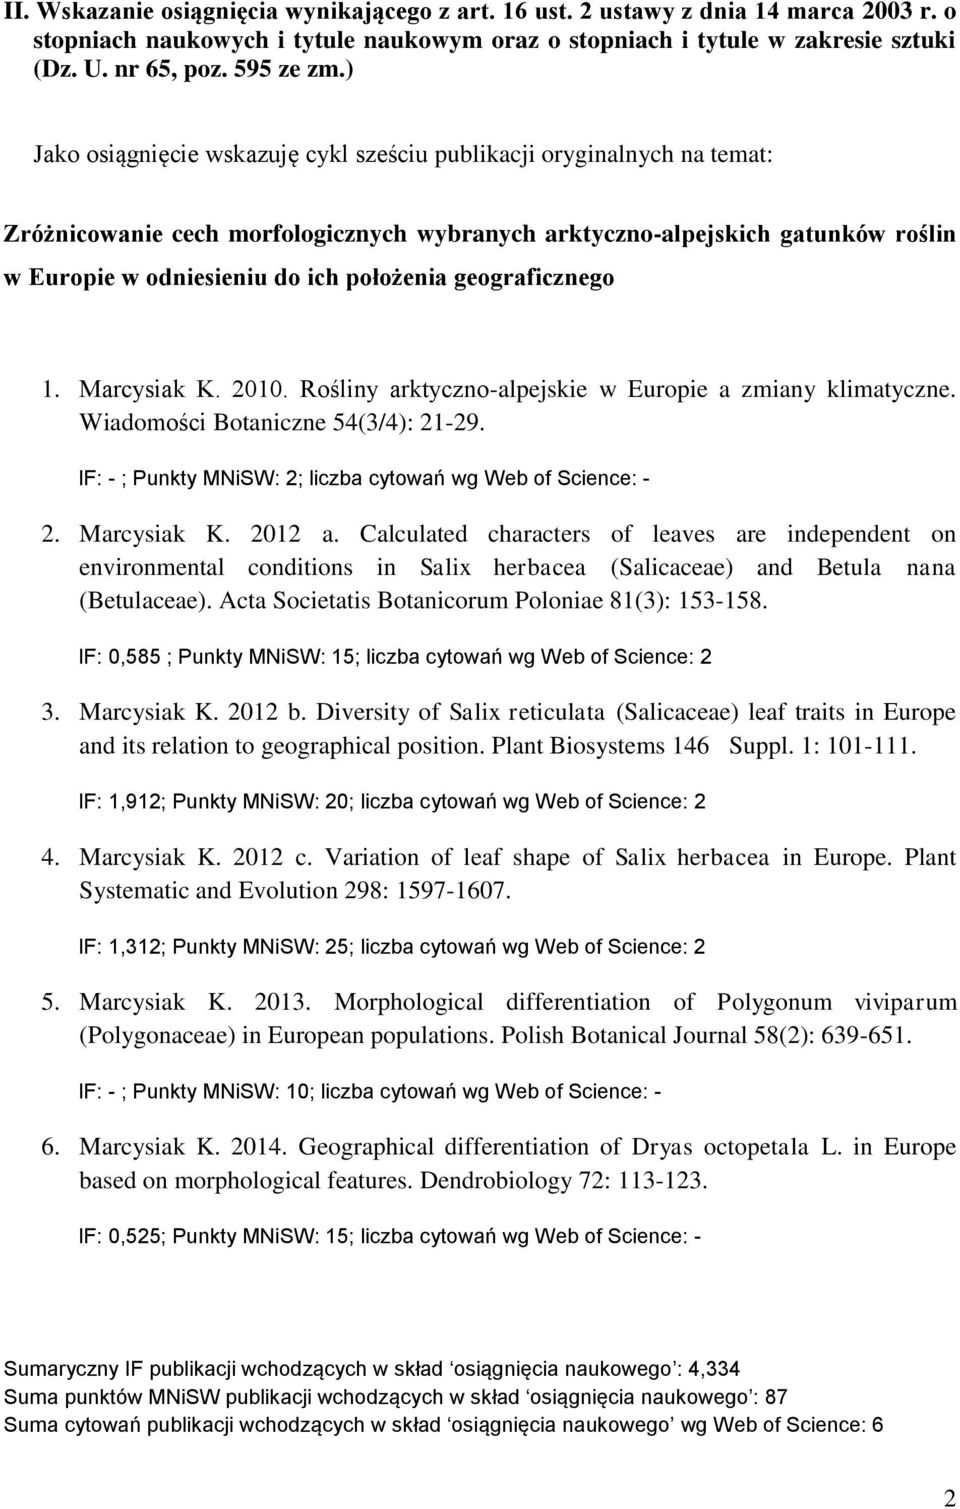 ) Jako osiągnięcie wskazuję cykl sześciu publikacji oryginalnych na temat: Zróżnicowanie cech morfologicznych wybranych arktyczno-alpejskich gatunków roślin w Europie w odniesieniu do ich położenia